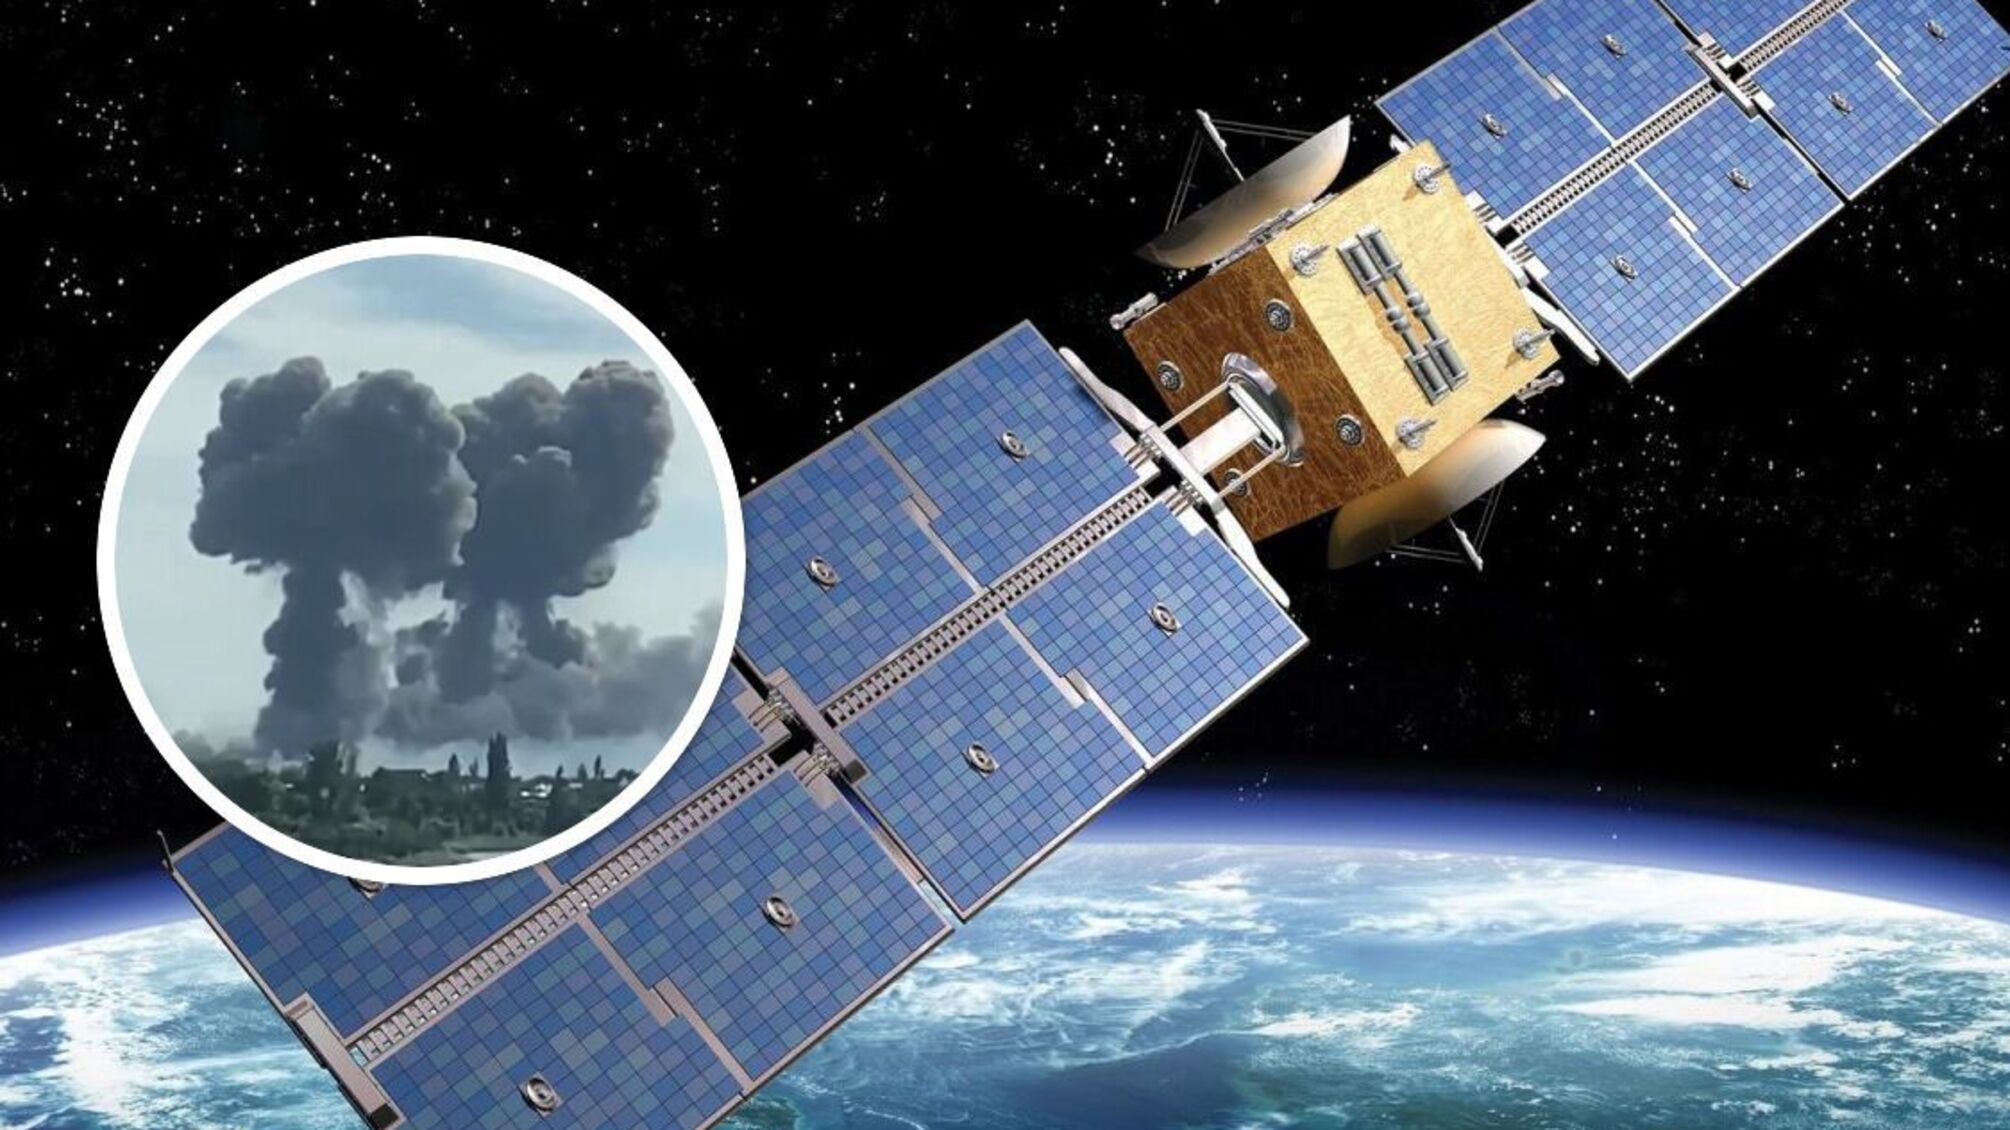 РФ 'зганьбилась' у Новофедорівці, тому має збивати американські супутники, – перехоплення ГУР